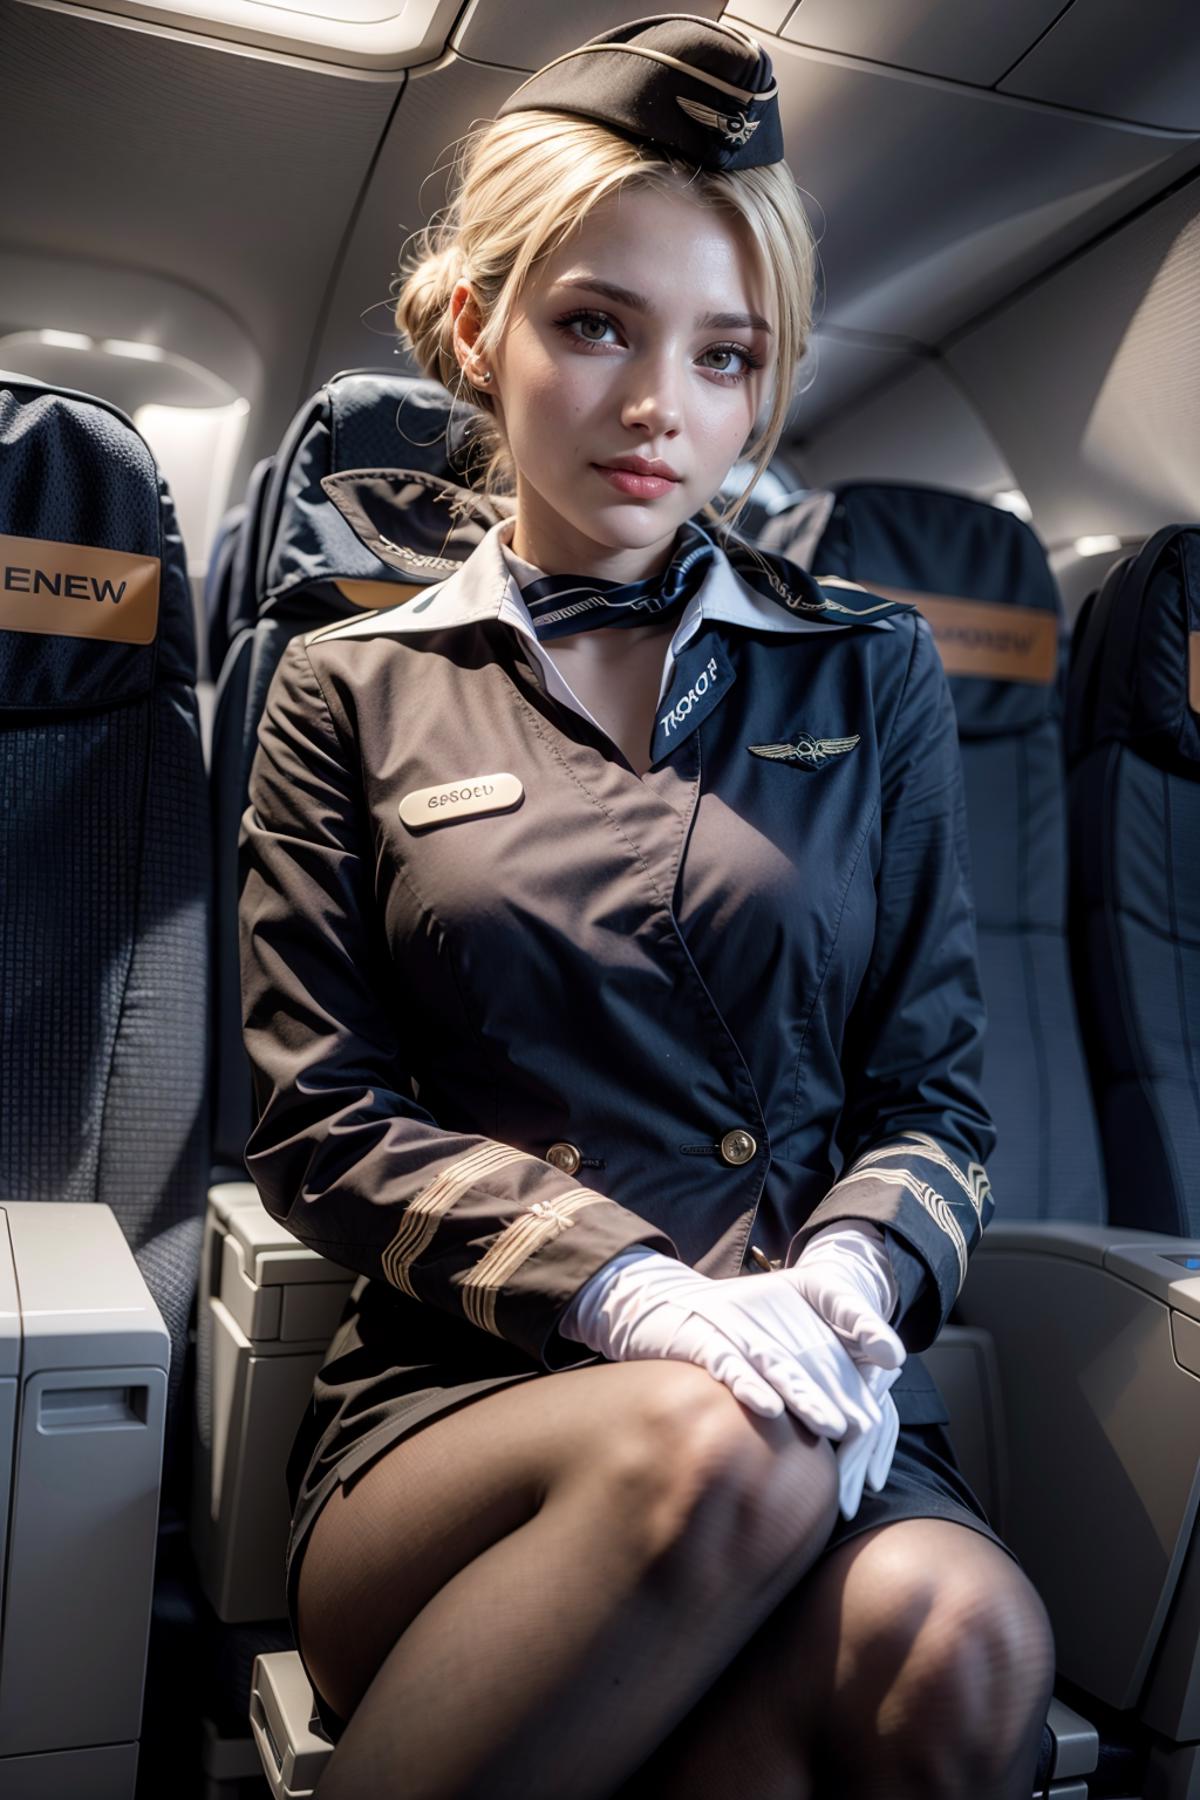 Russian Stewardess image by feetie